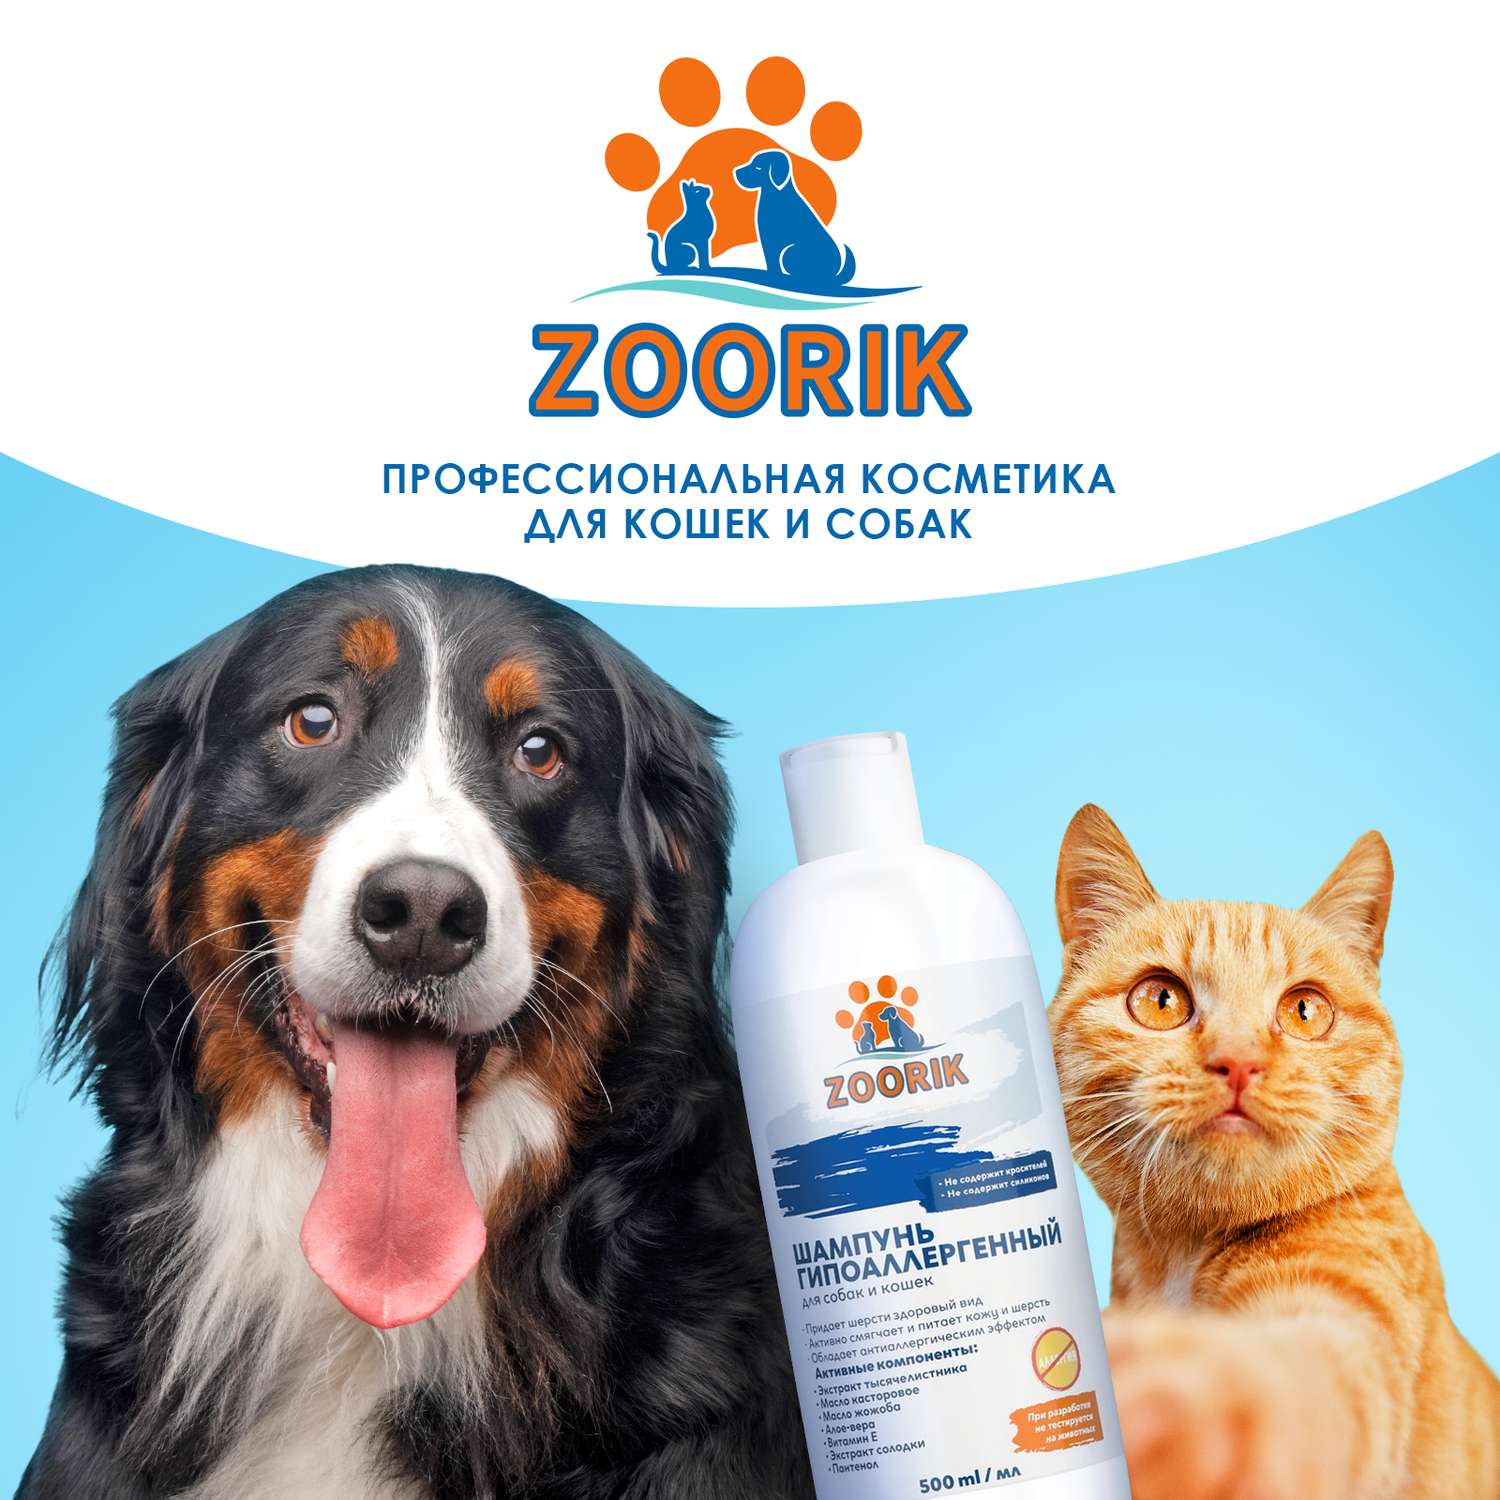 Шампунь для собак и кошек ZOORIK гипоаллергенный 500 мл - фото 9